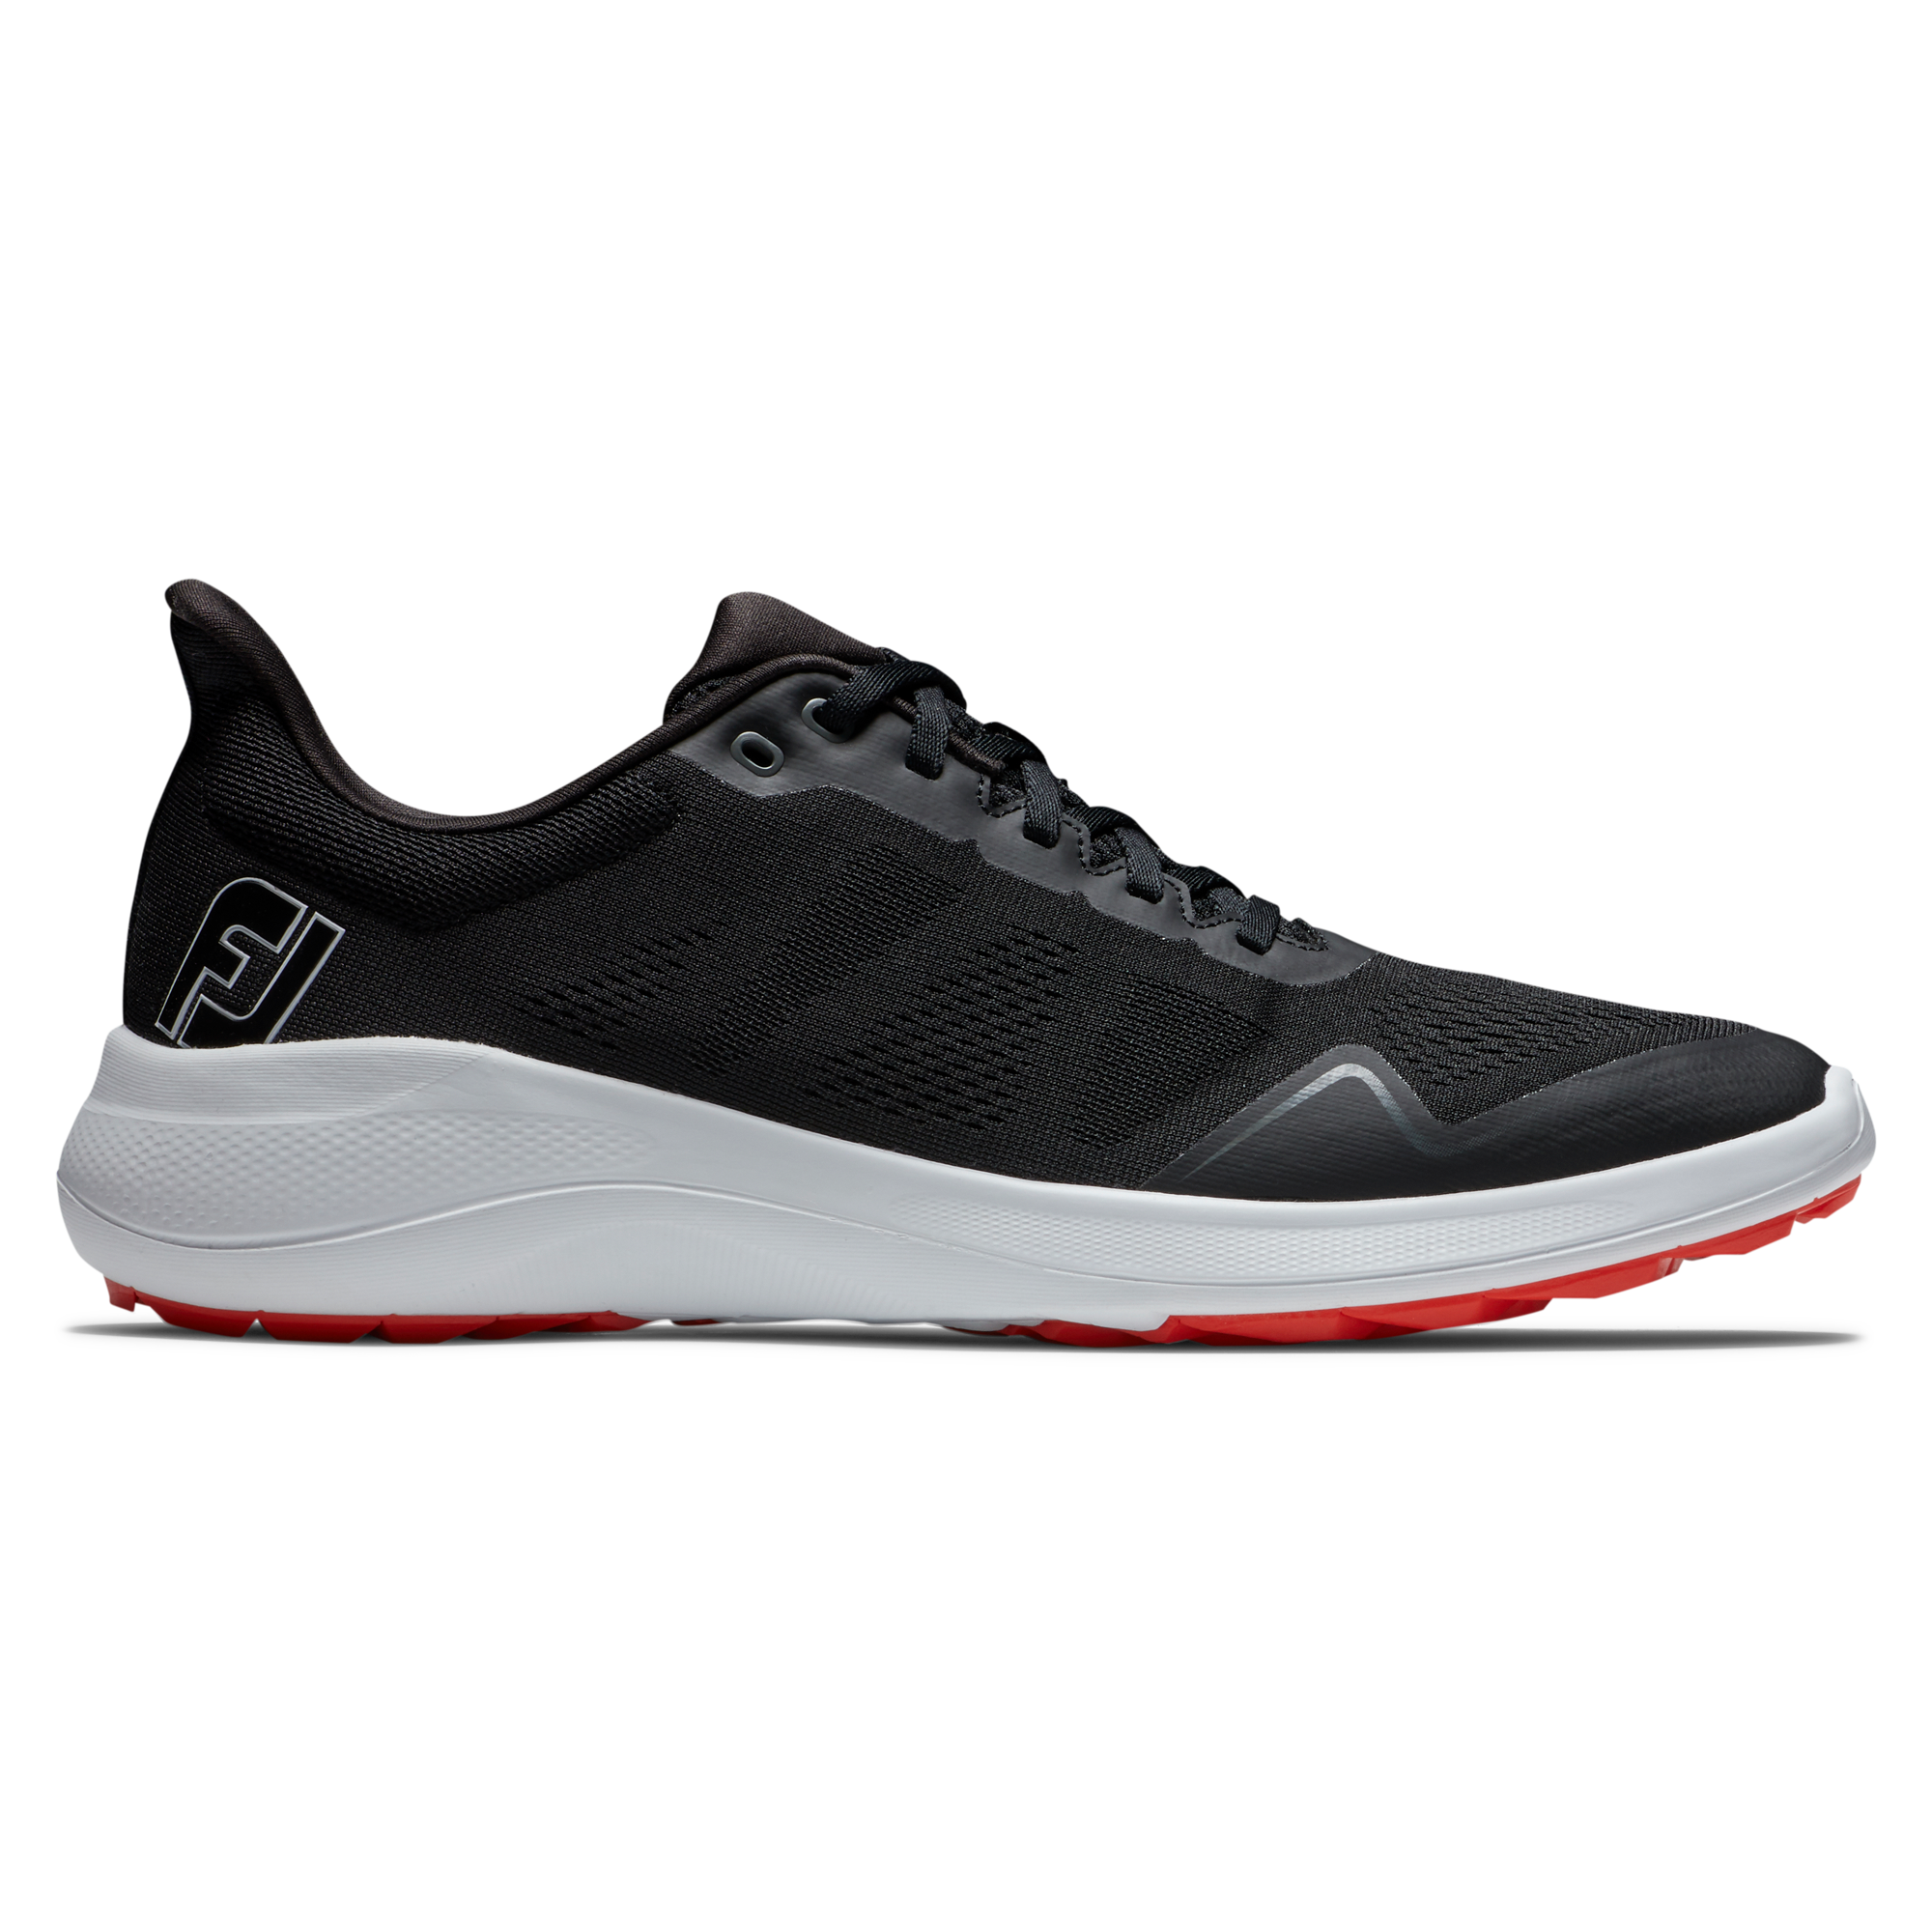 FootJoy Flex pánské golfové boty, černé, vel. 6,5 UK